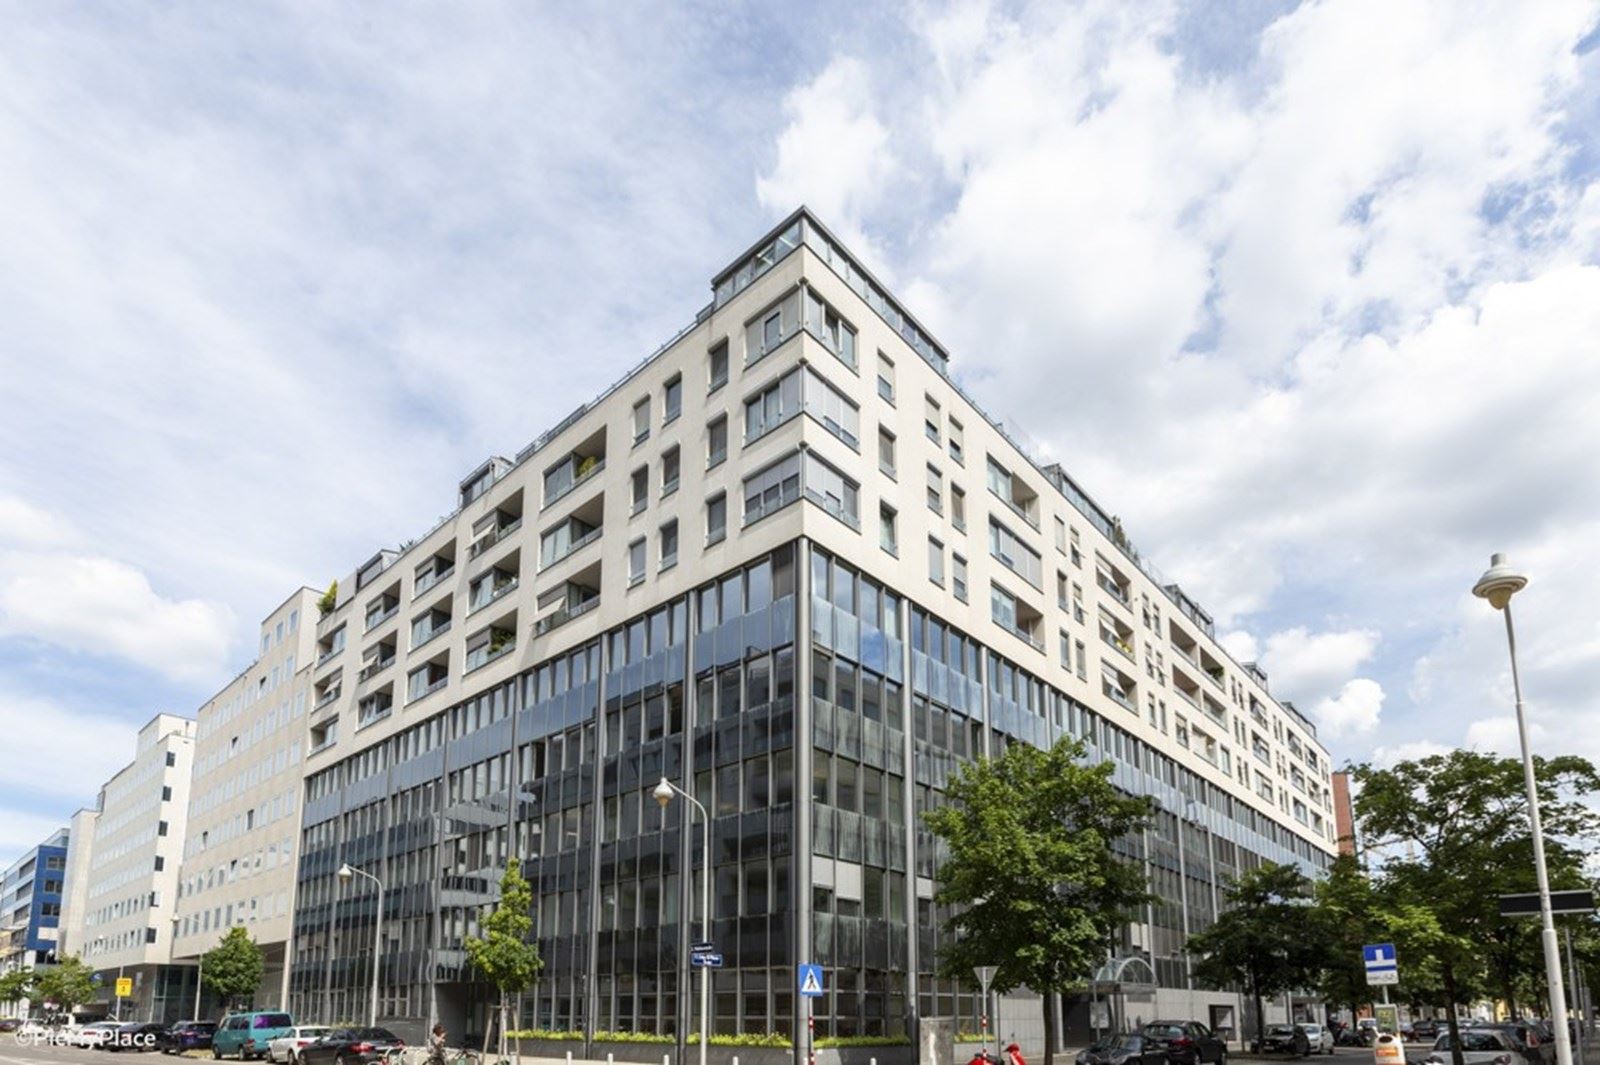 Modesta Real Estate mediates new company location for BBU in Carré Lassalle